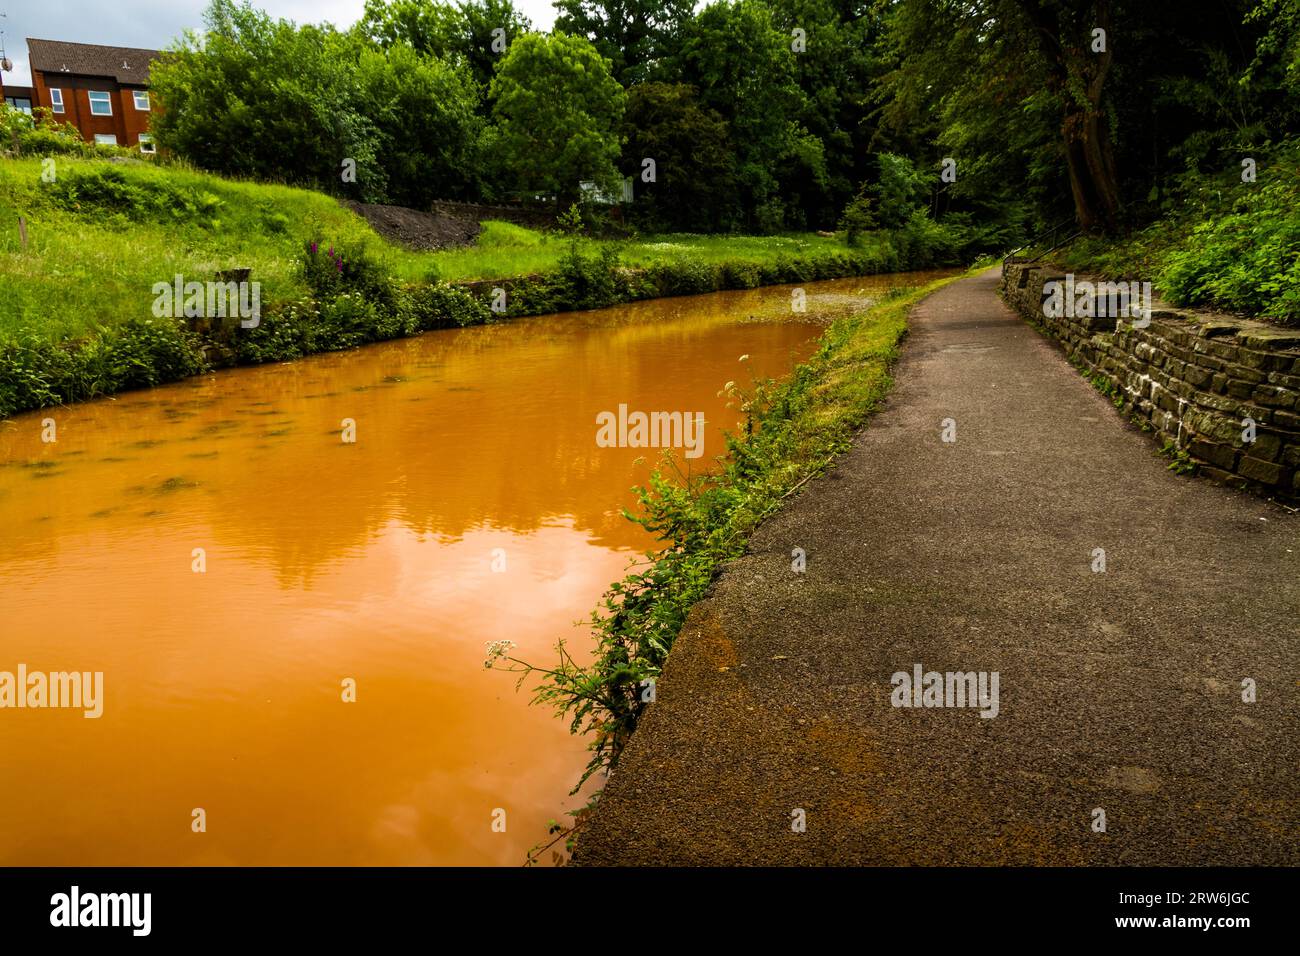 Le canal Trent et Mersey, Kidsgrove, Newcastle-under-Lyme. L'eau est orange car si de l'argile s'est déposée dans le tunnel de Harecastle, paysage vu fr Banque D'Images